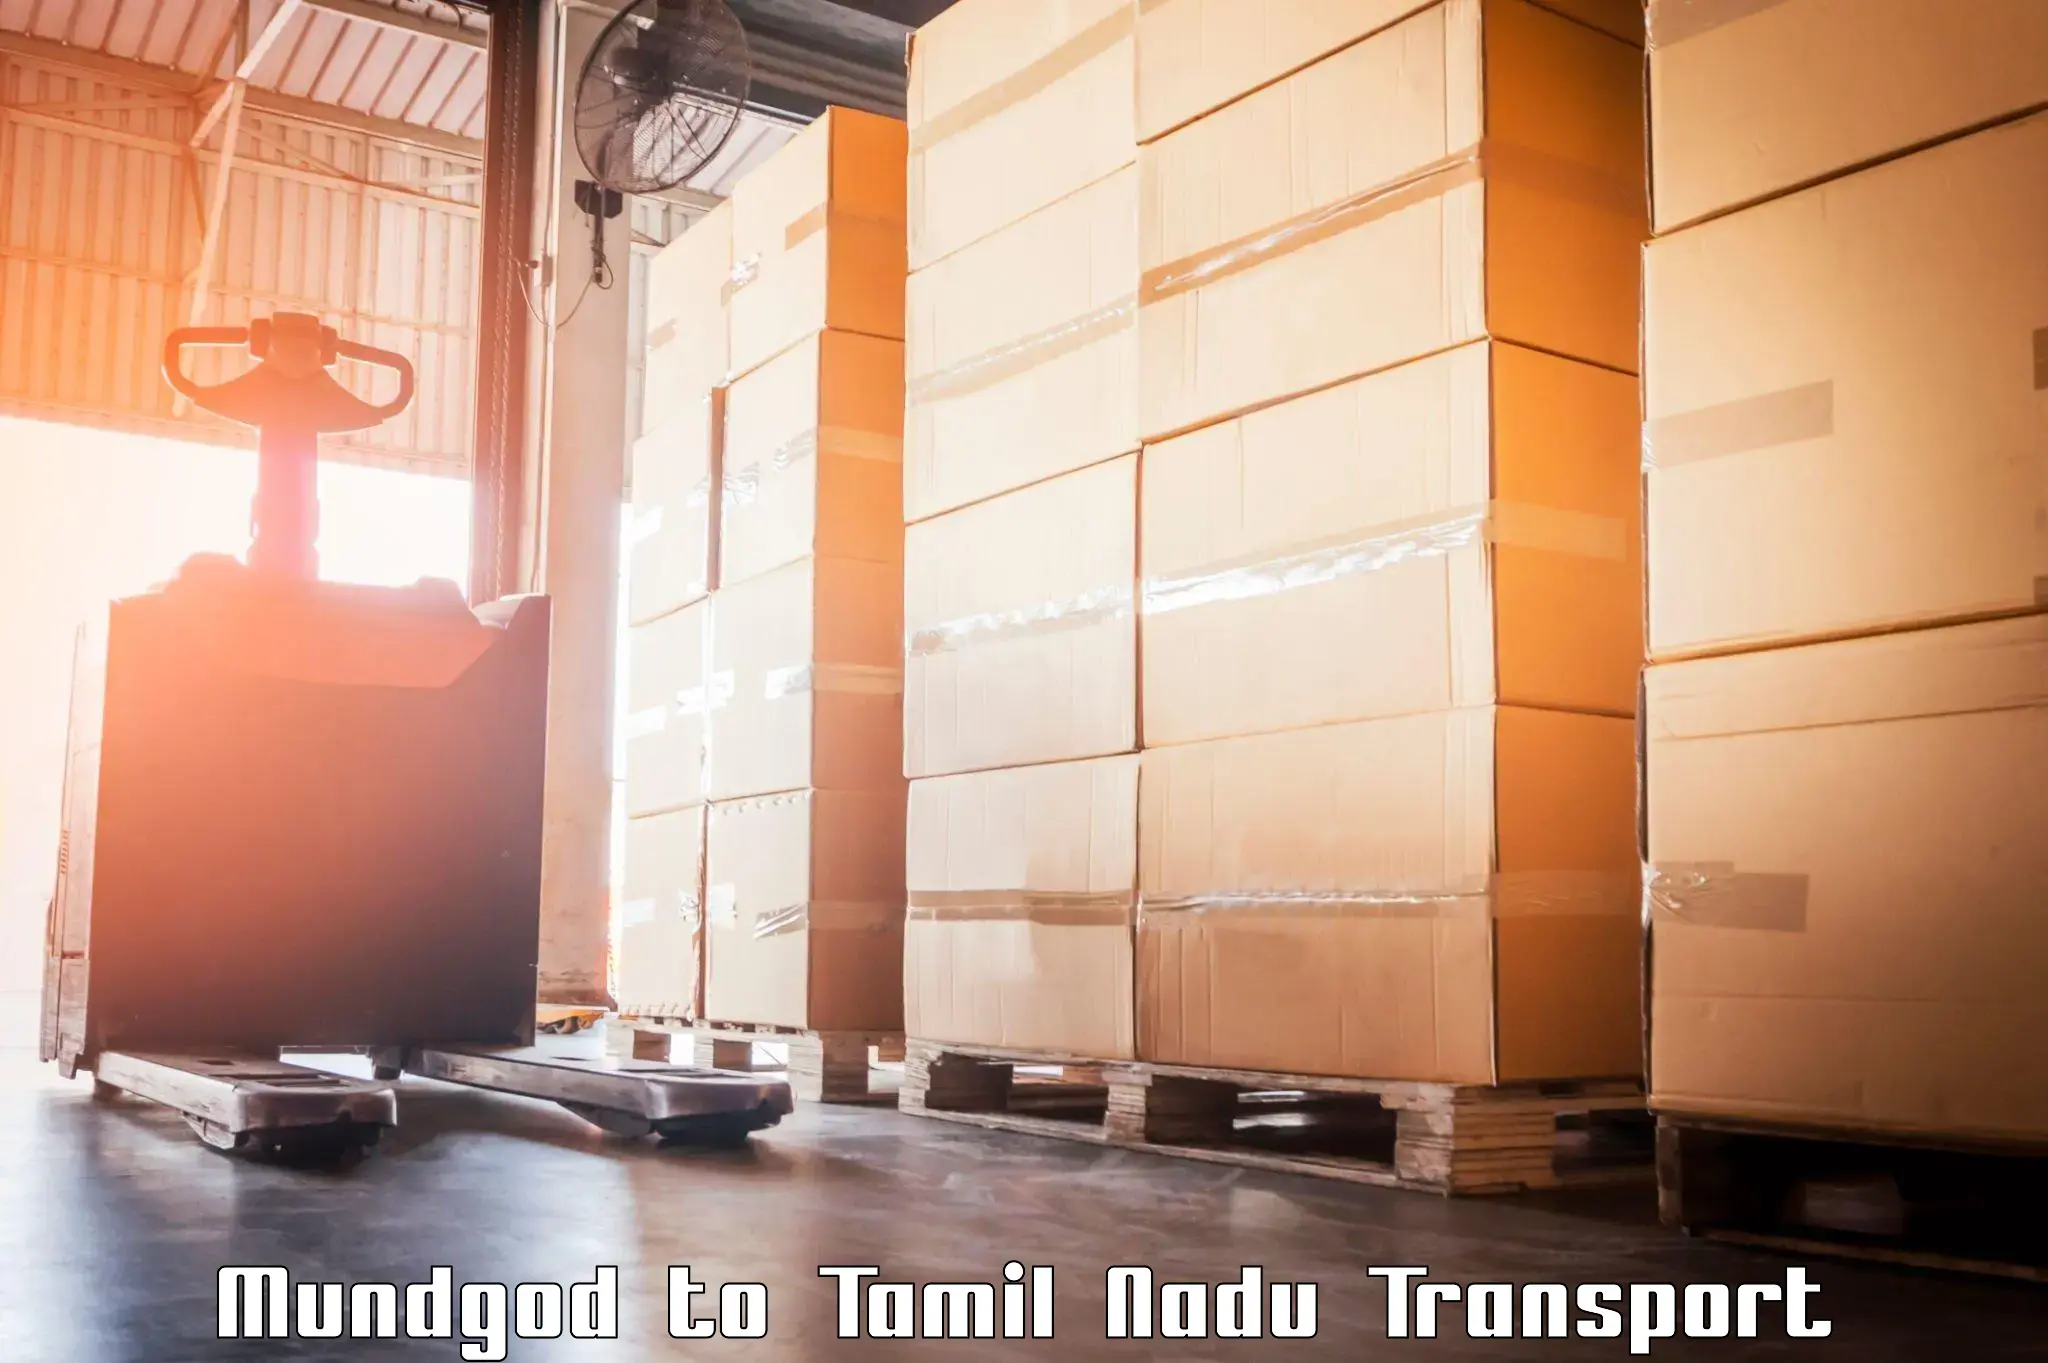 Pick up transport service Mundgod to Kovilpatti